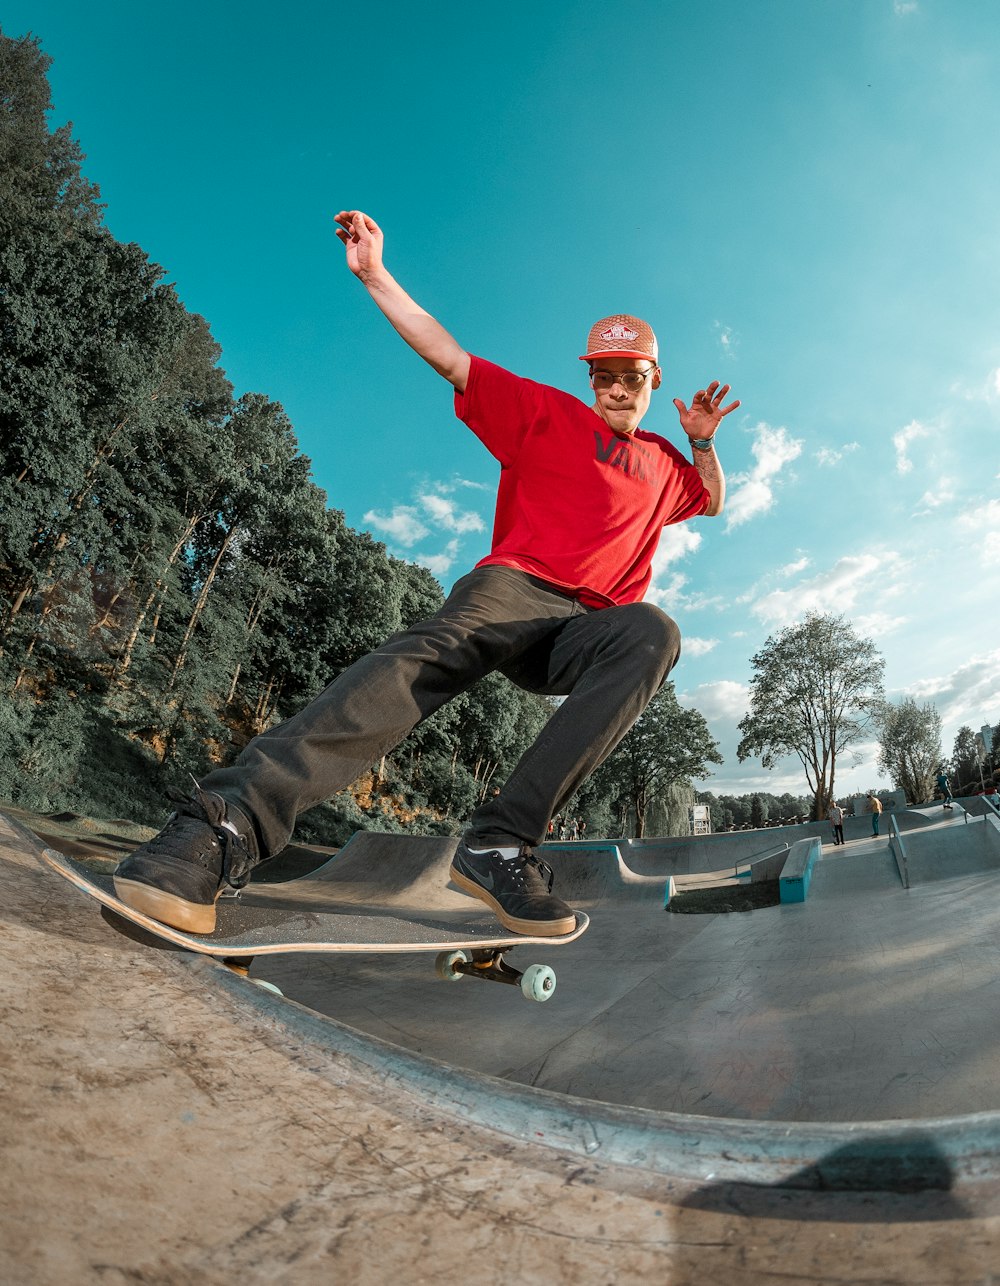 man riding skateboard on skate park during daytime